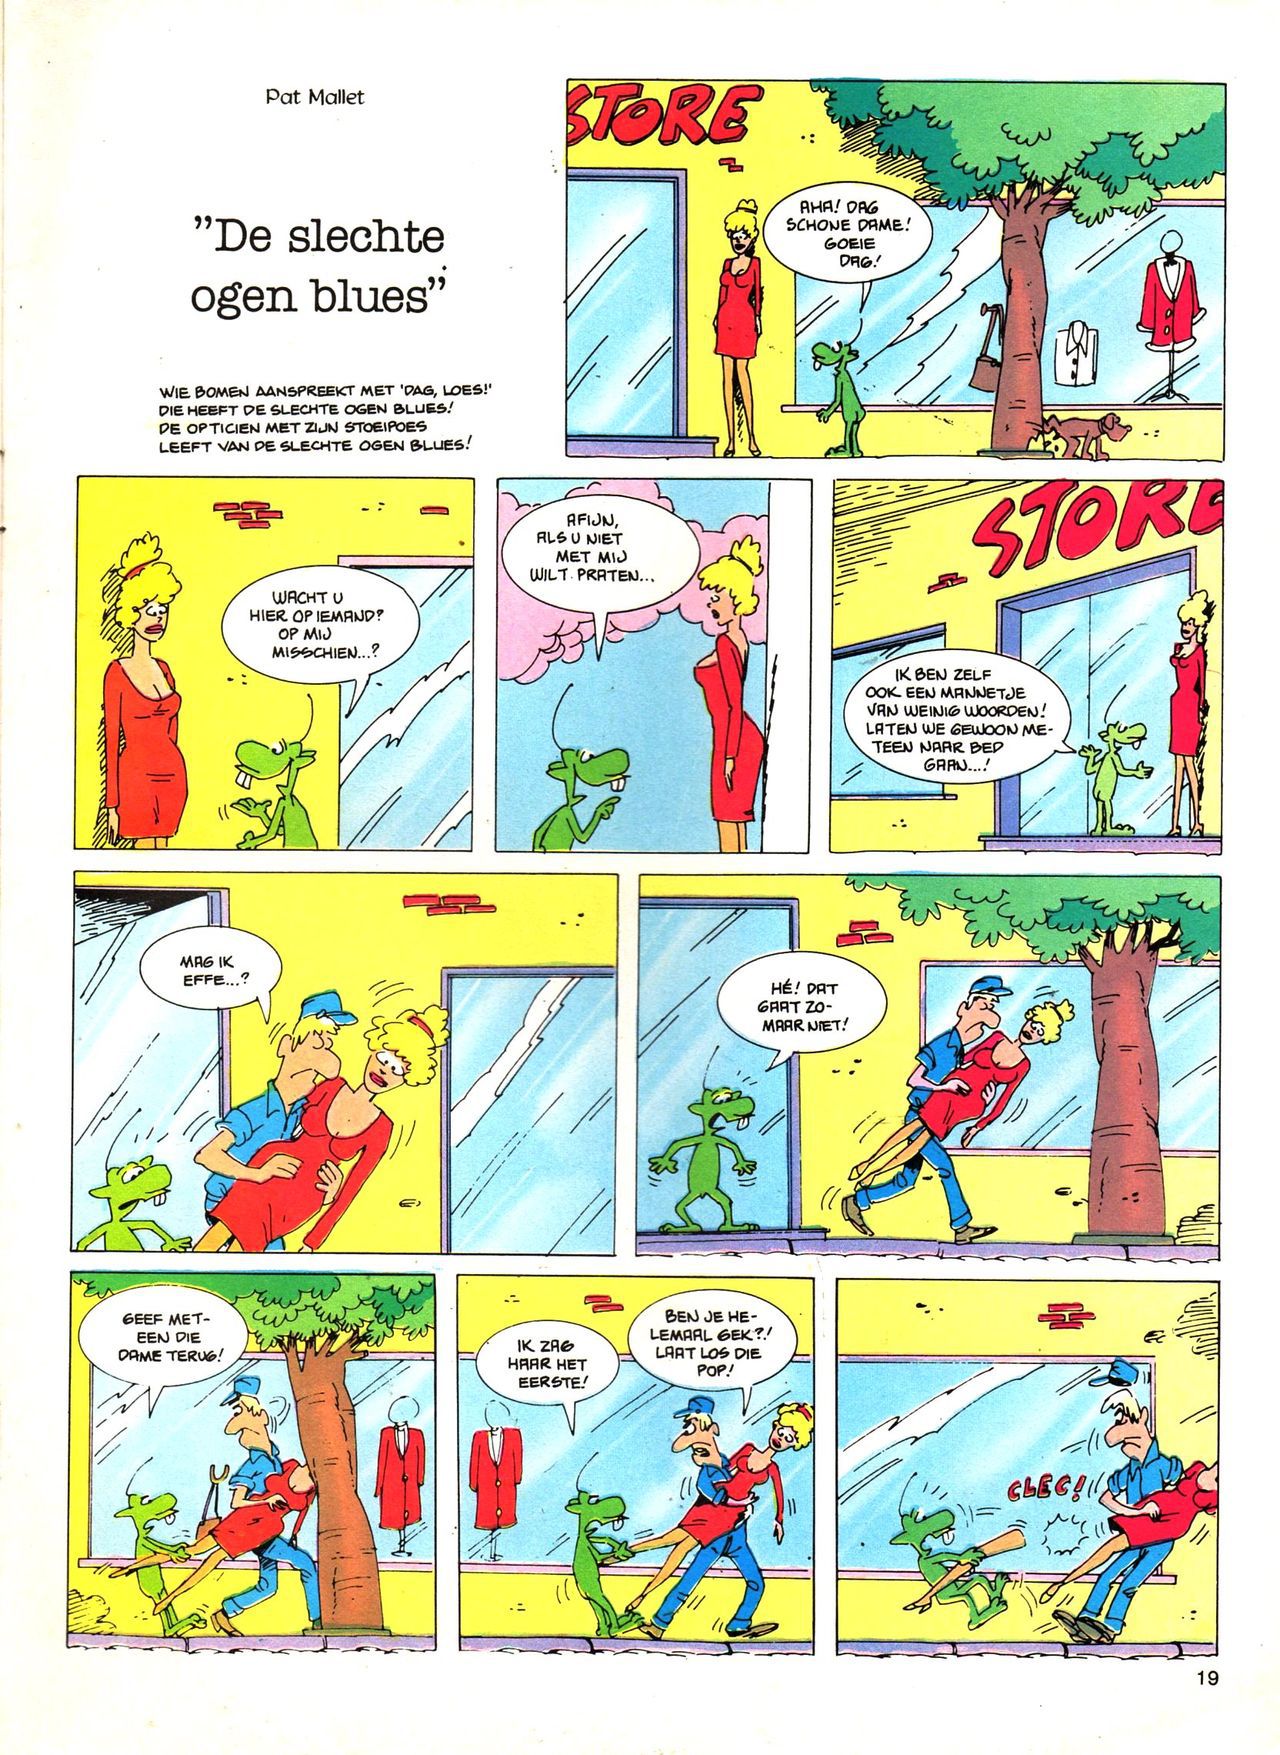 Het Is Groen En Het.. - 04 - Mag Ik Die Ballen.. OH, PARDON! (Dutch) Een oude humoristische serie van Pat Mallet 19